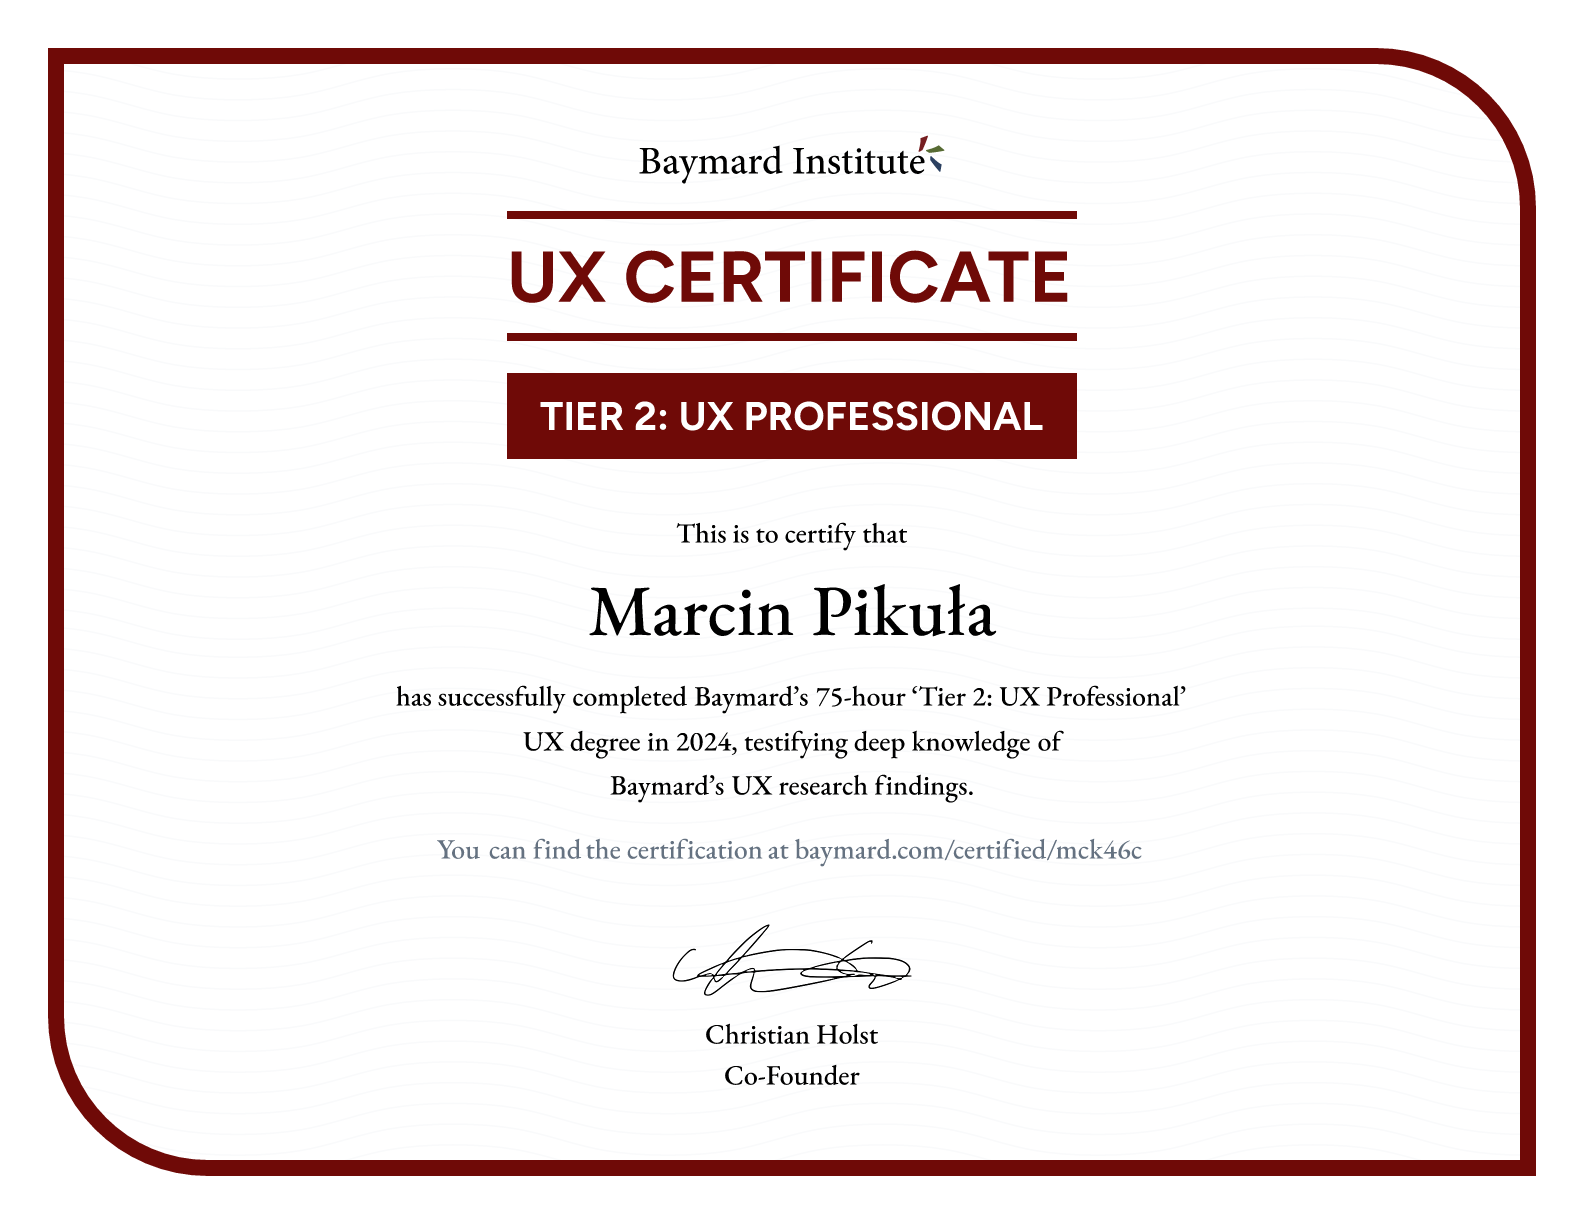 Marcin Pikuła’s certificate